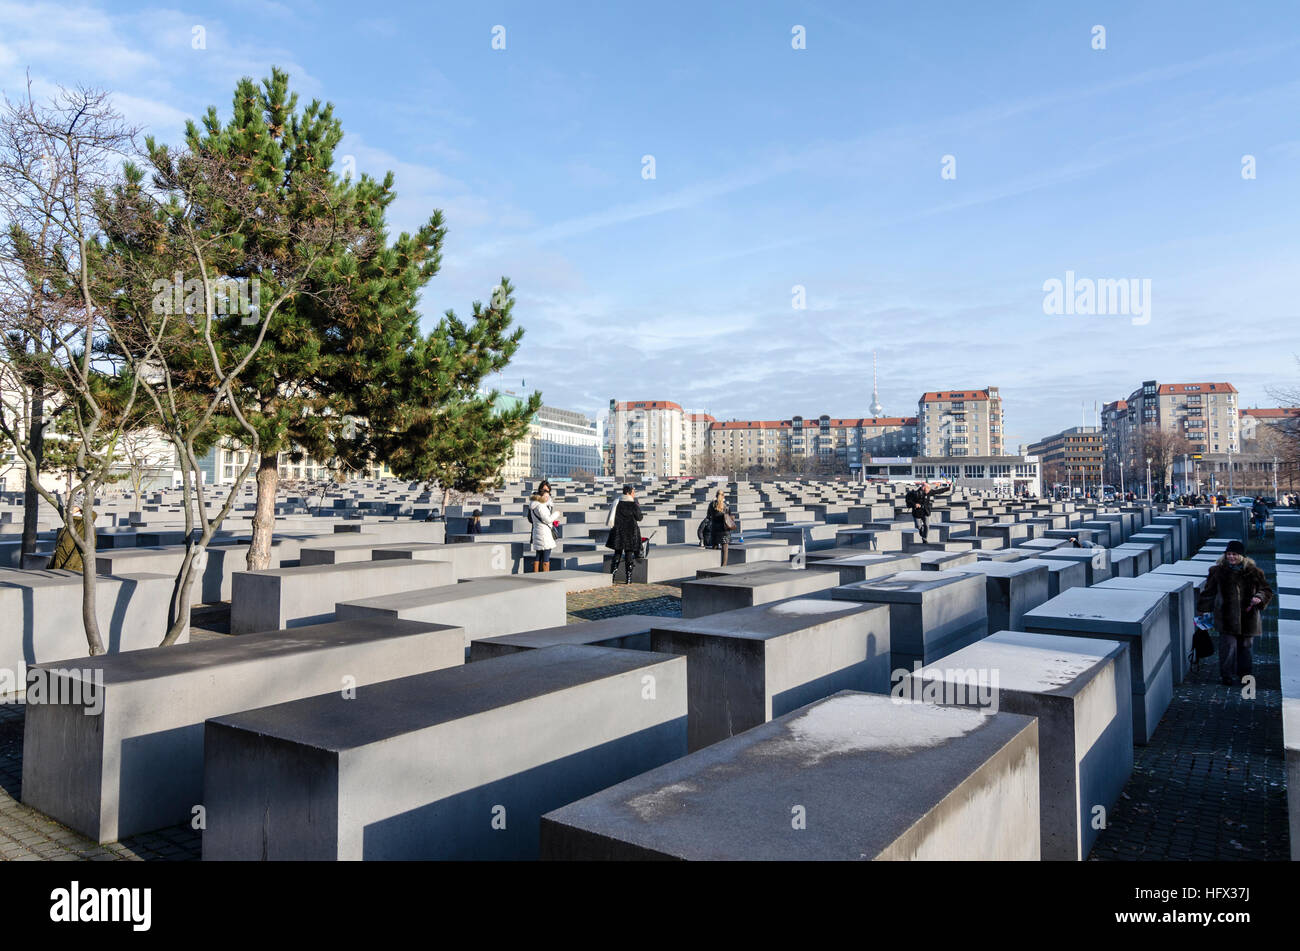 Vue sur le Mémorial aux Juifs assassinés d'Europe Denkmal für die ermordeten Juden Europas. Berlin, Allemagne Banque D'Images